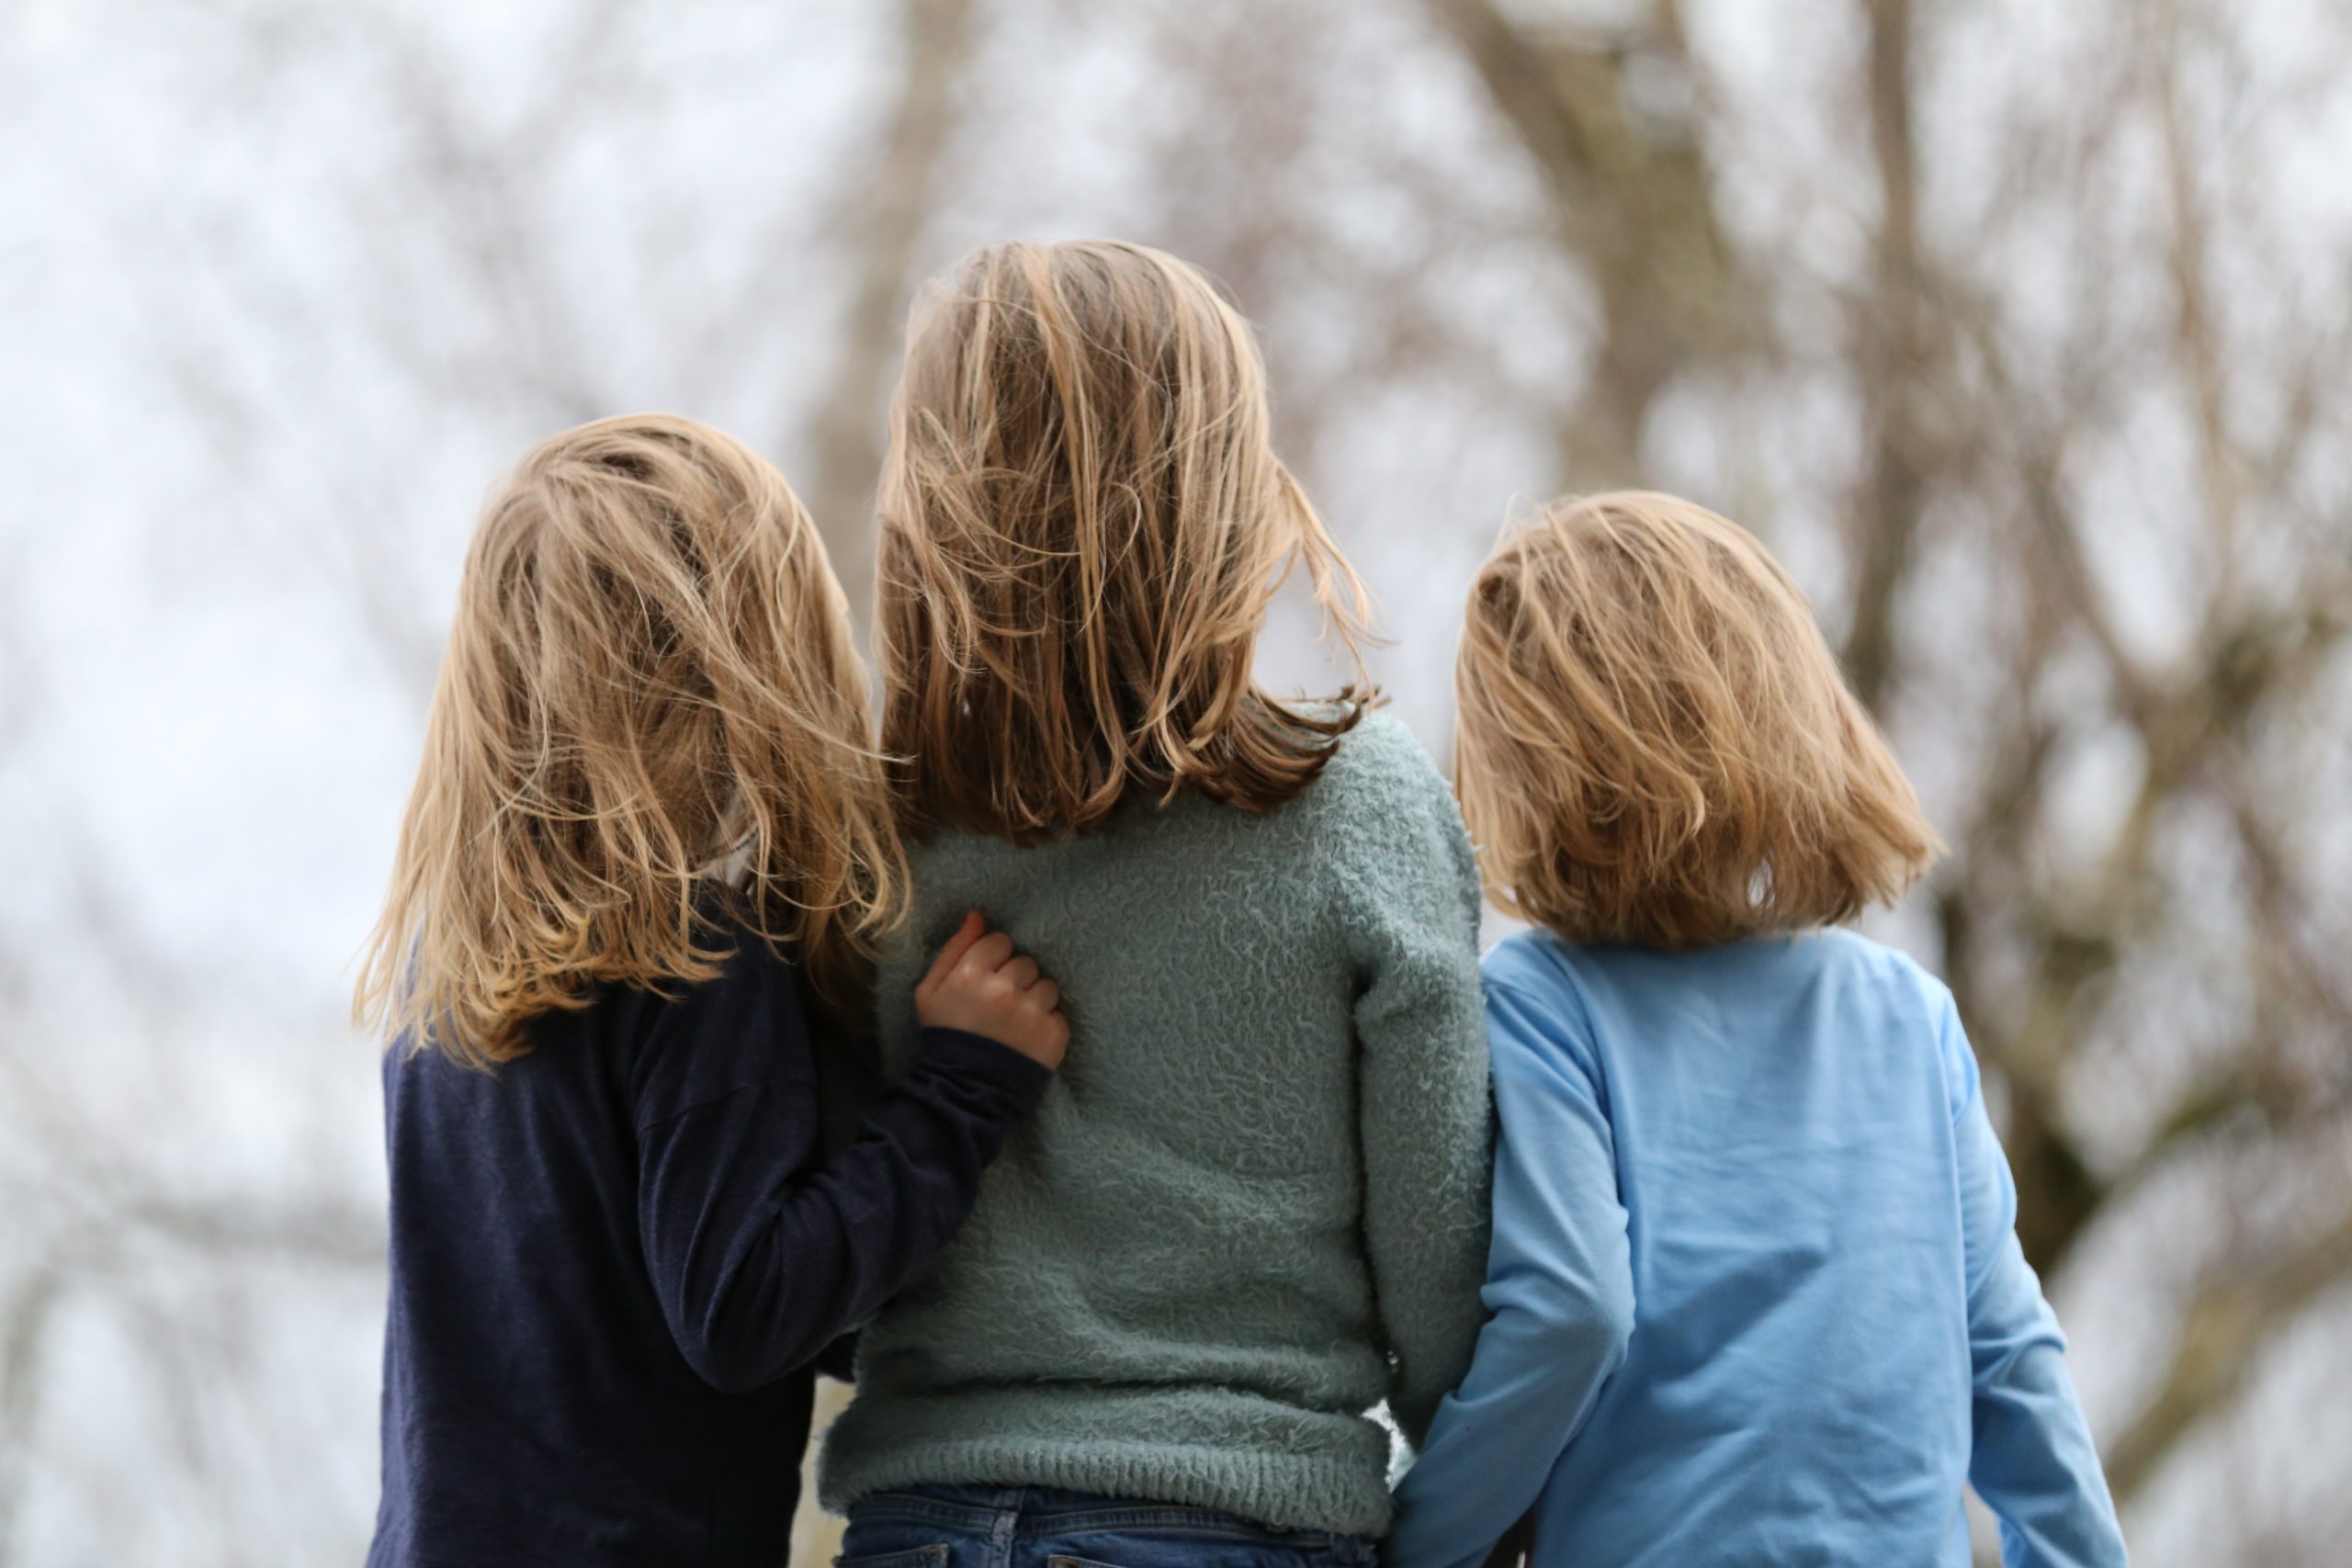 Kolme pitkähiuksista lasta seisoo selin kameraan, samalla toisistaan kiinni pitäen. vasemman puoleisella lapsella on yllään musta paita, keskimmäisellä vihreä ja oikeanpuoleisella vaalean sininen. Lasten hiukset hulmuavat tuulessa.